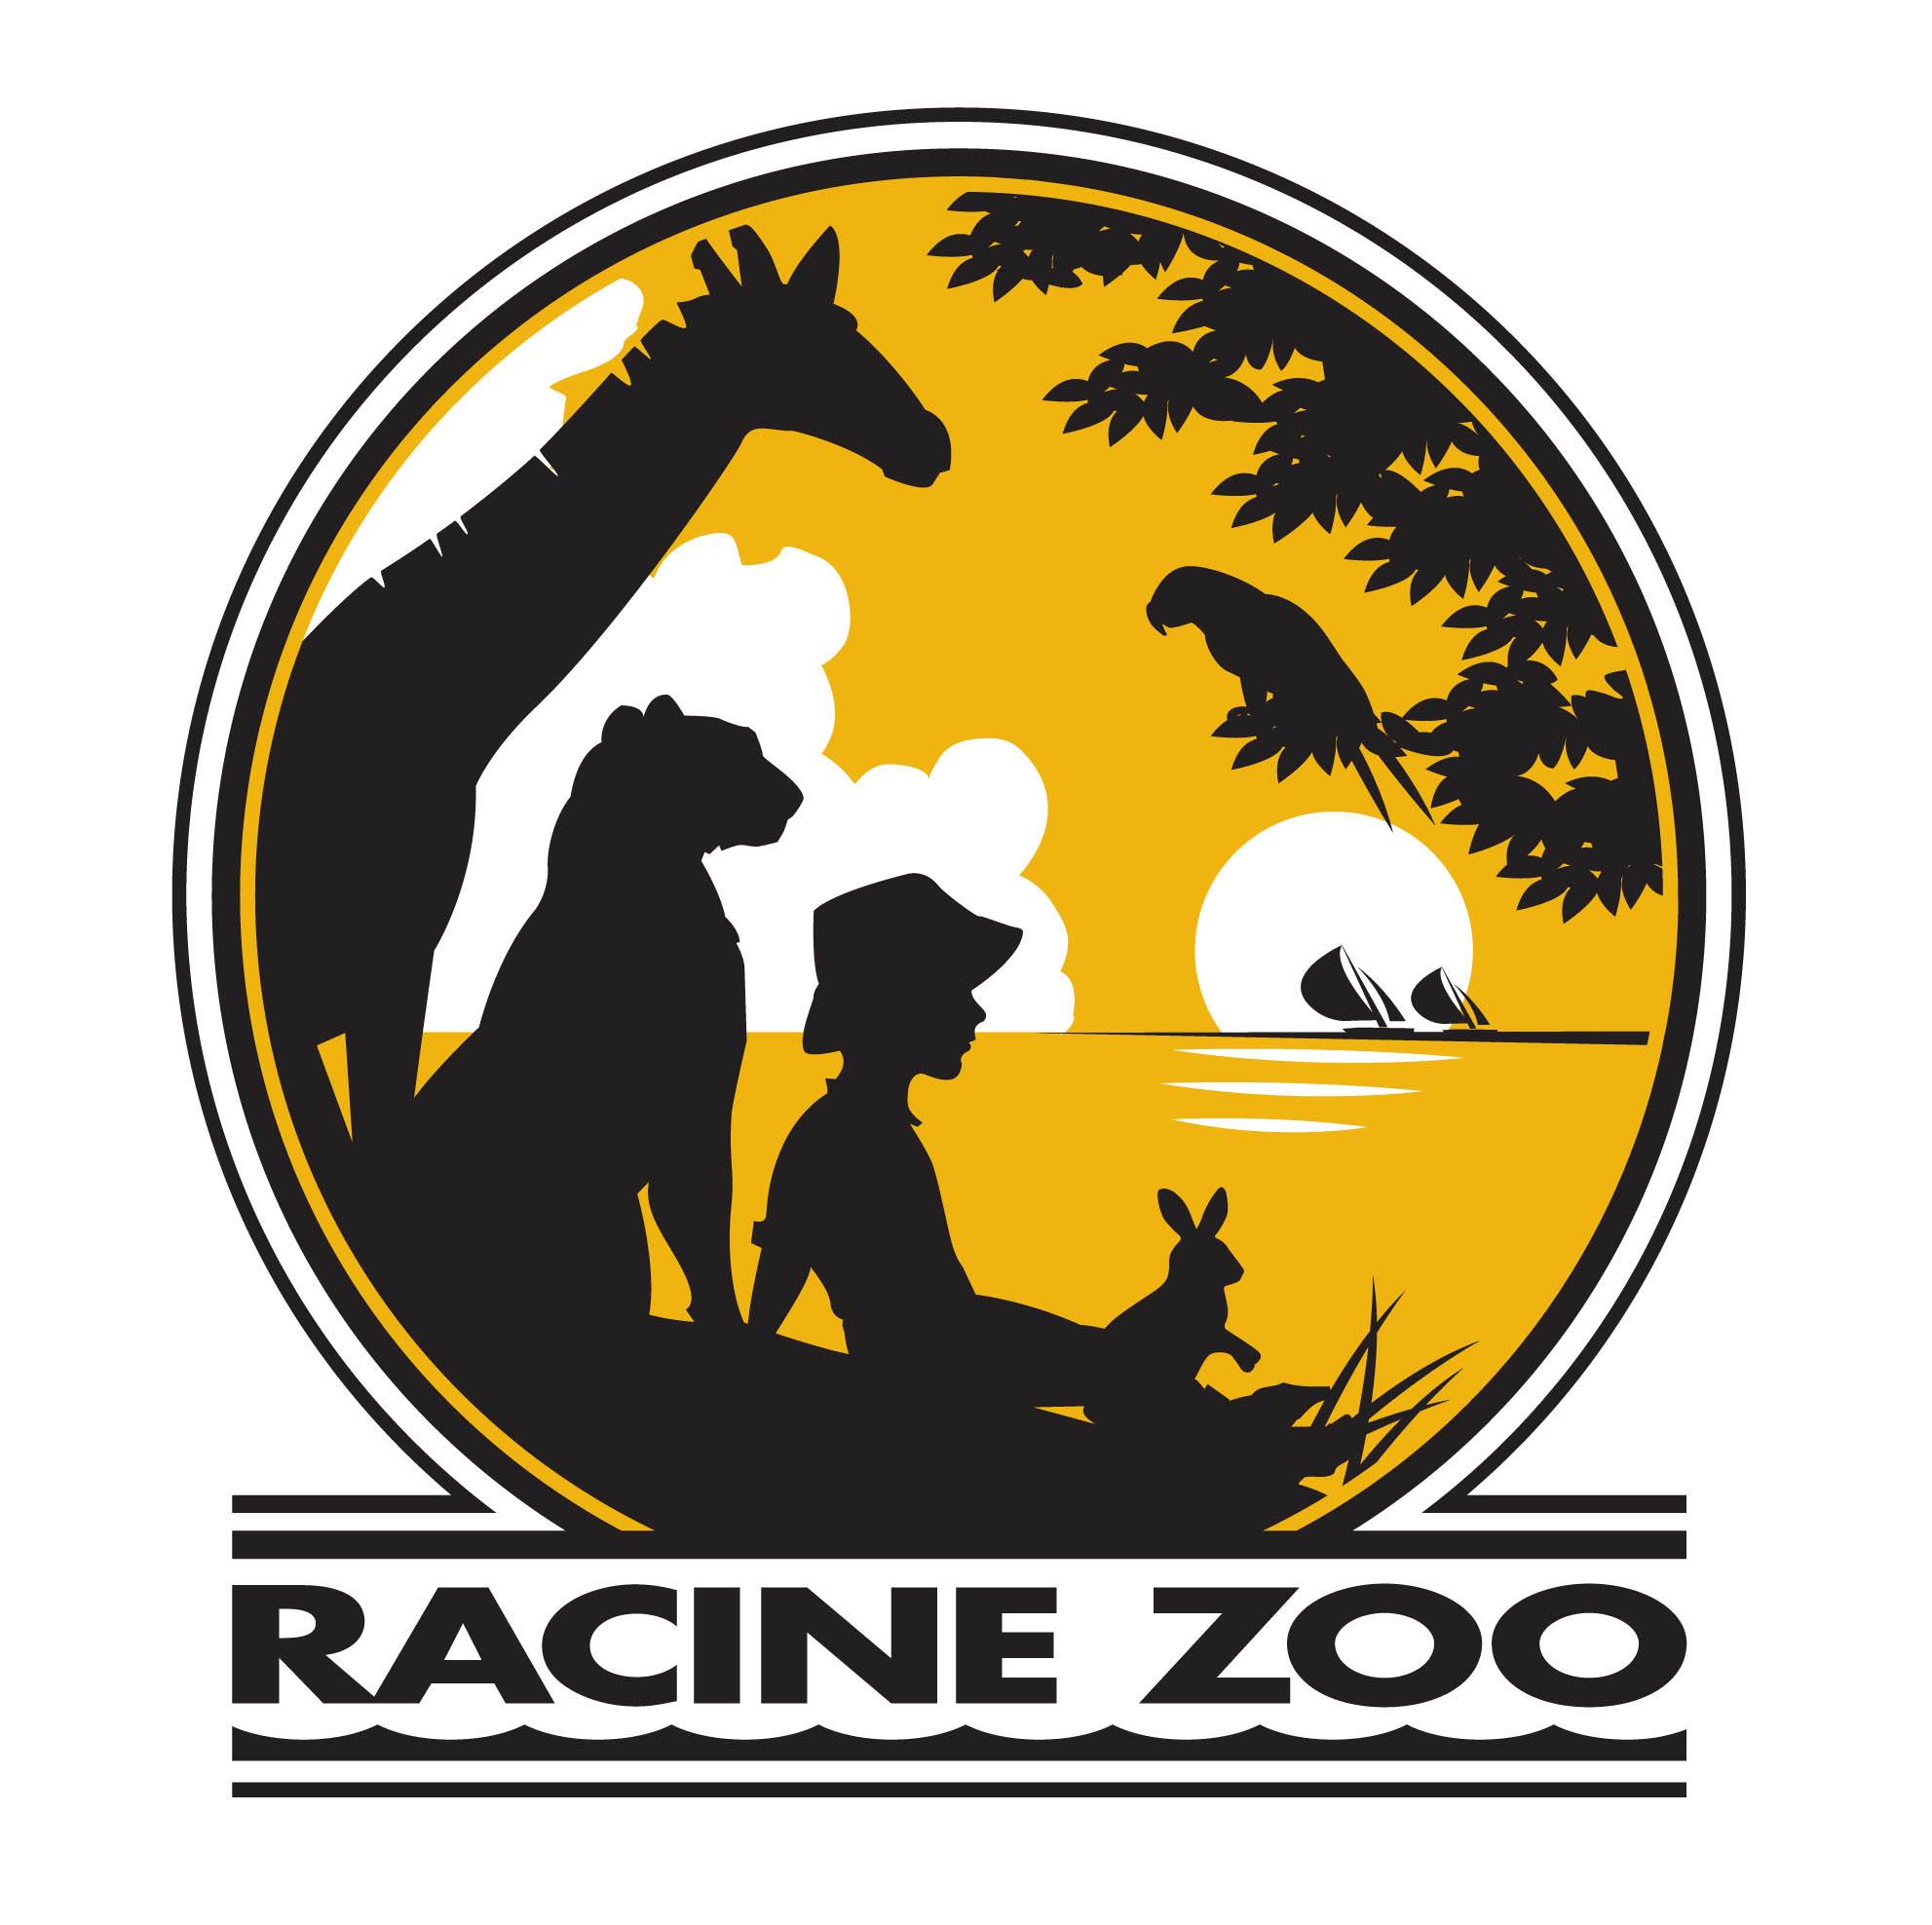 Company logo of Racine Zoo